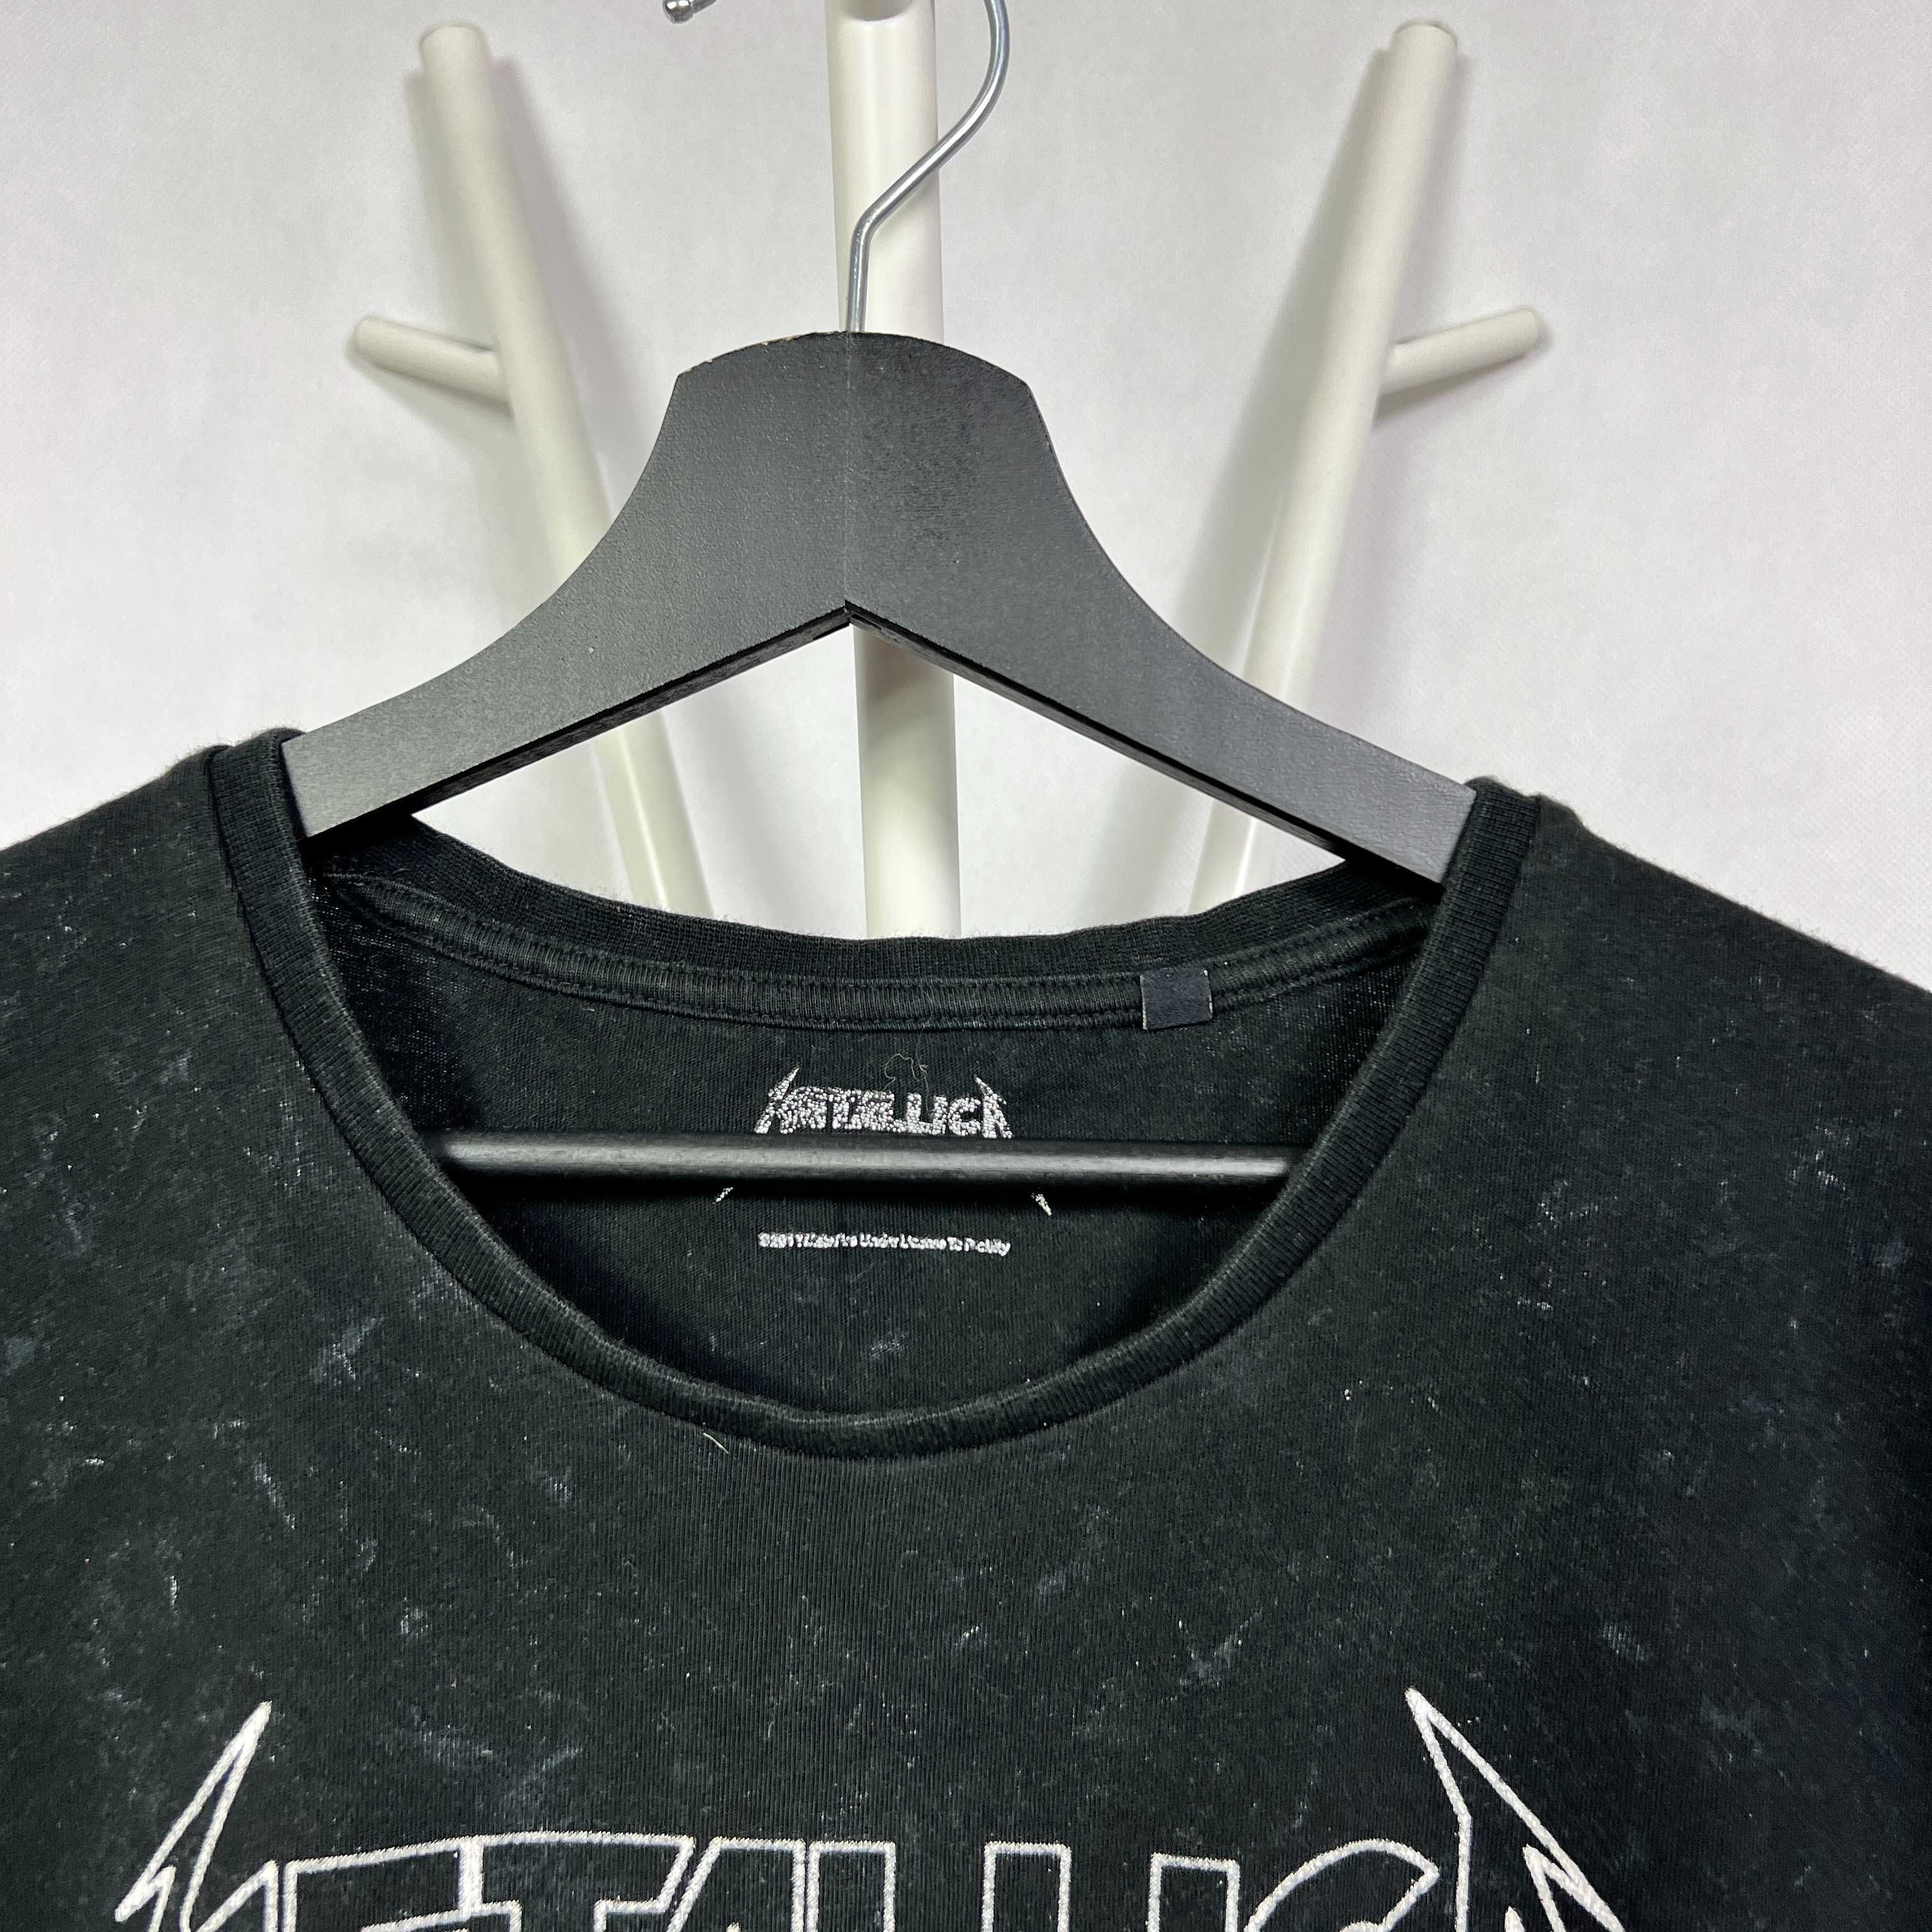 Koszulka z krótkim rękawem Metallica